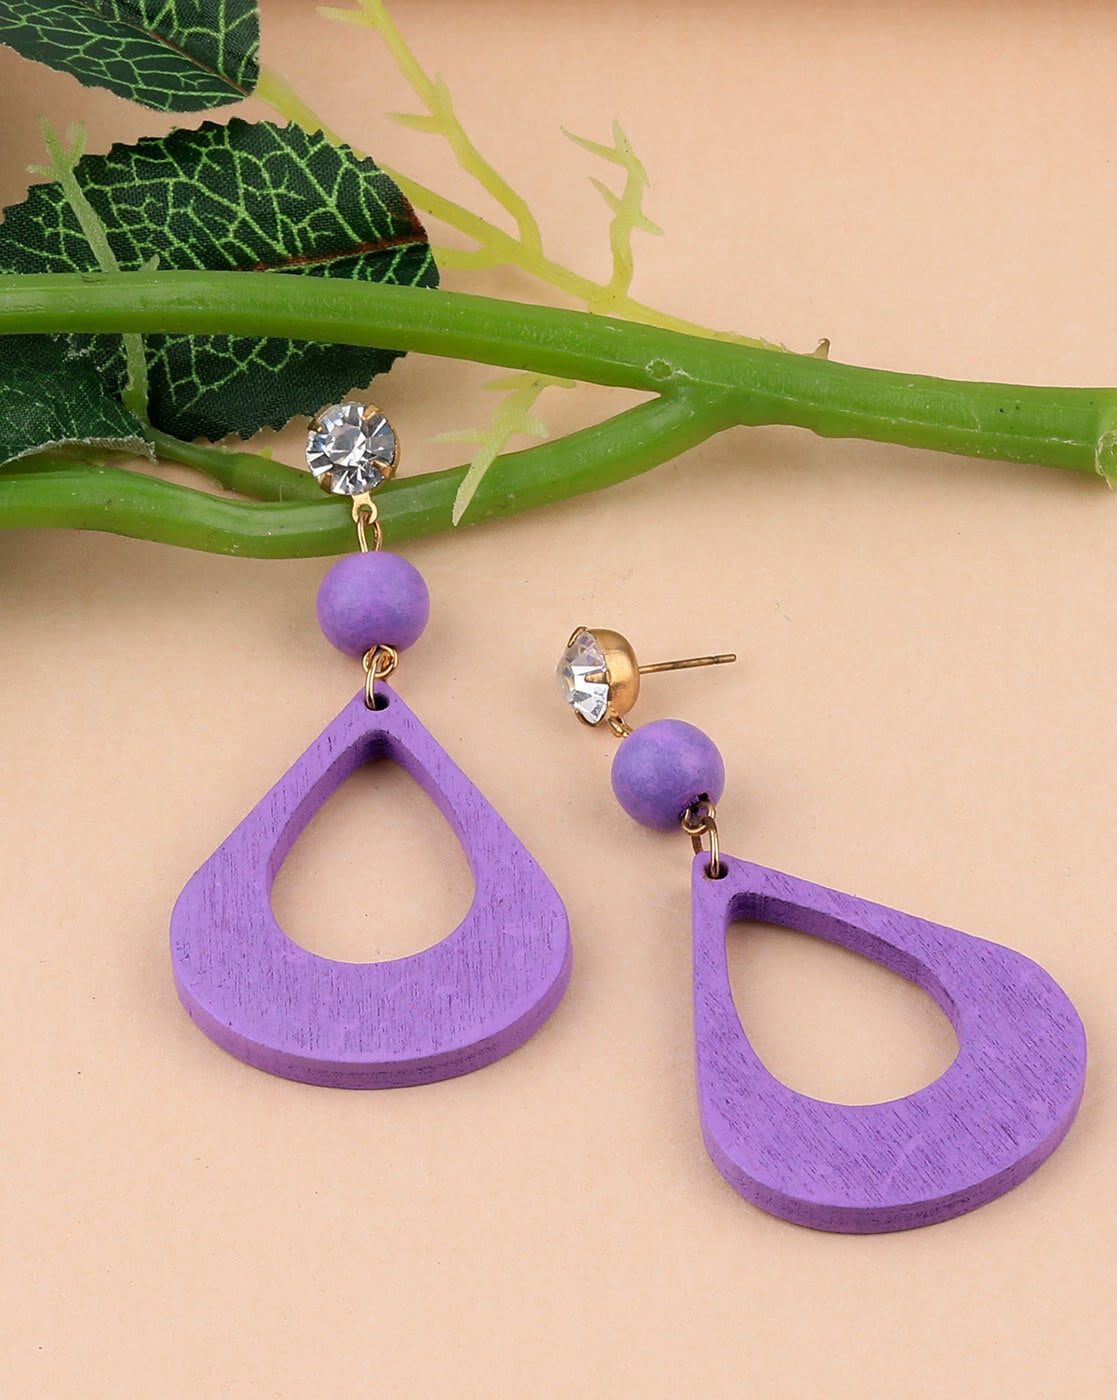 Vintage  Jewelry  Vtg Purple Glass Silver Tone Metal Pierced Costume  Jewelry Earrings  Poshmark